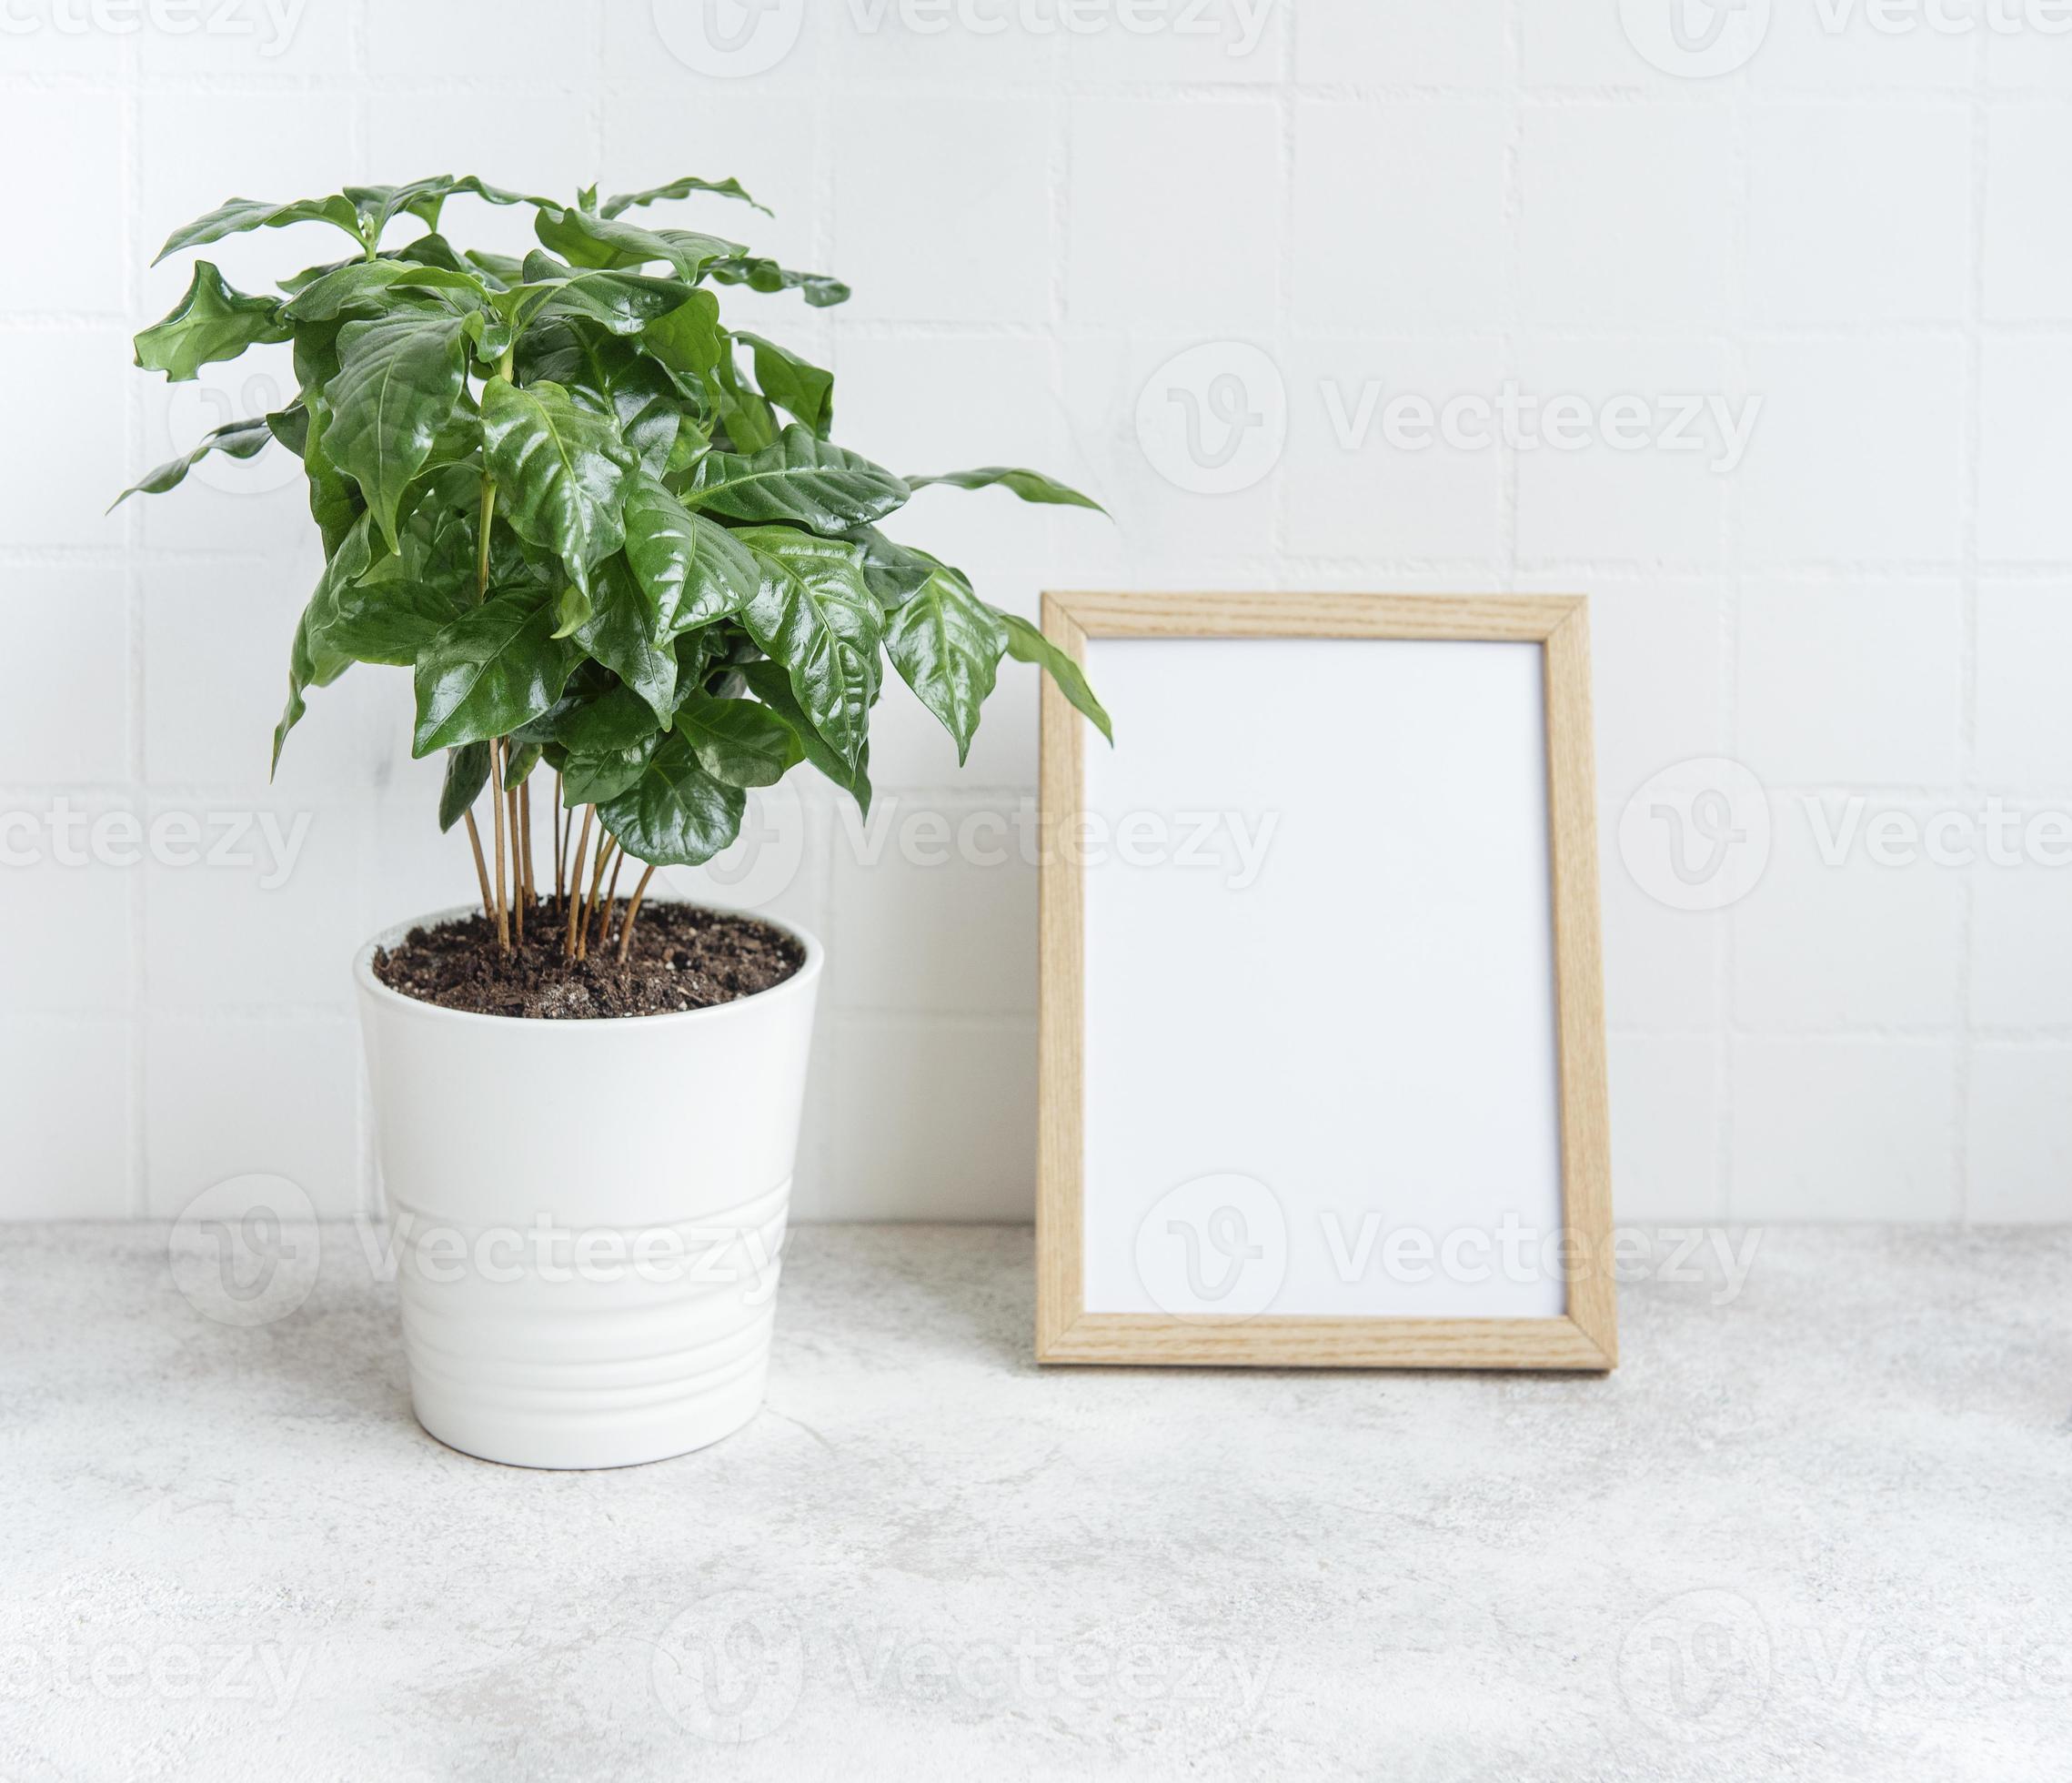 germogli dell'albero della pianta del caffè in un vaso foto